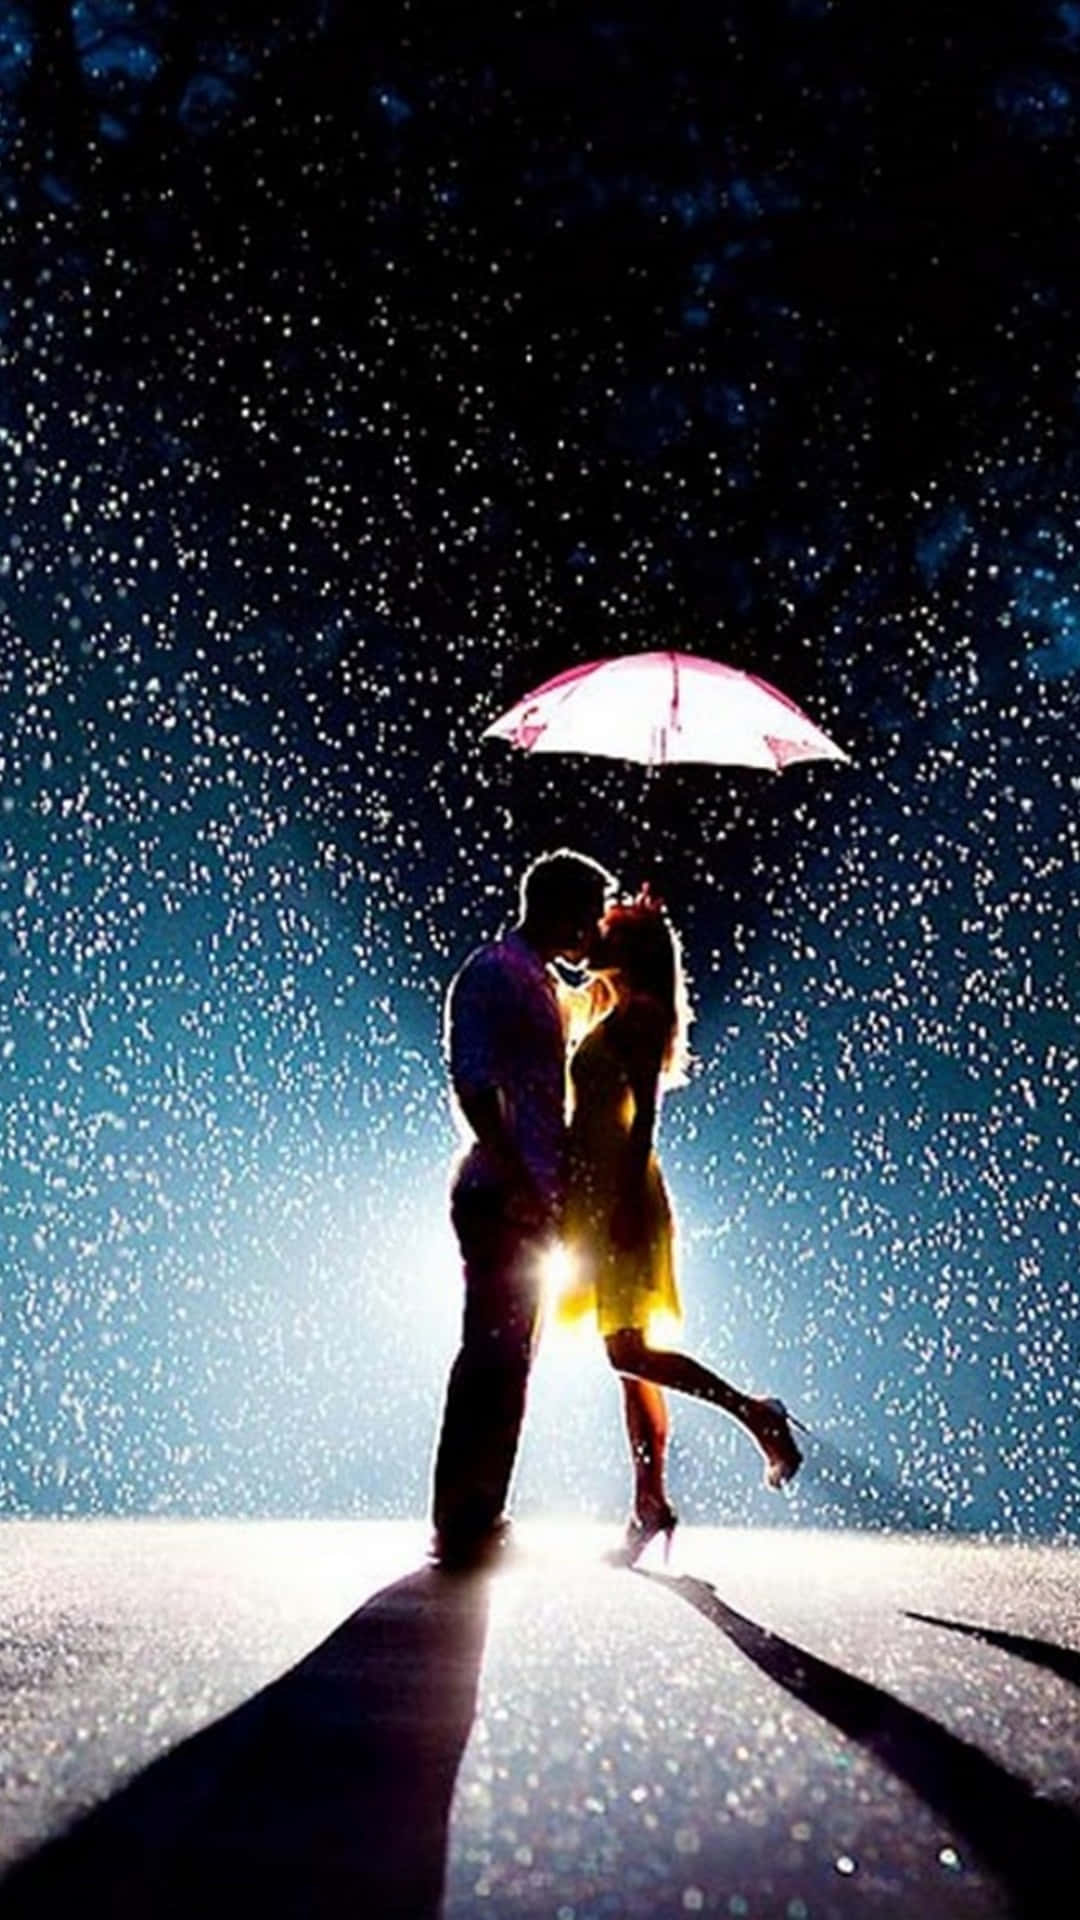 Baciosotto La Pioggia - Sfondo Romantico